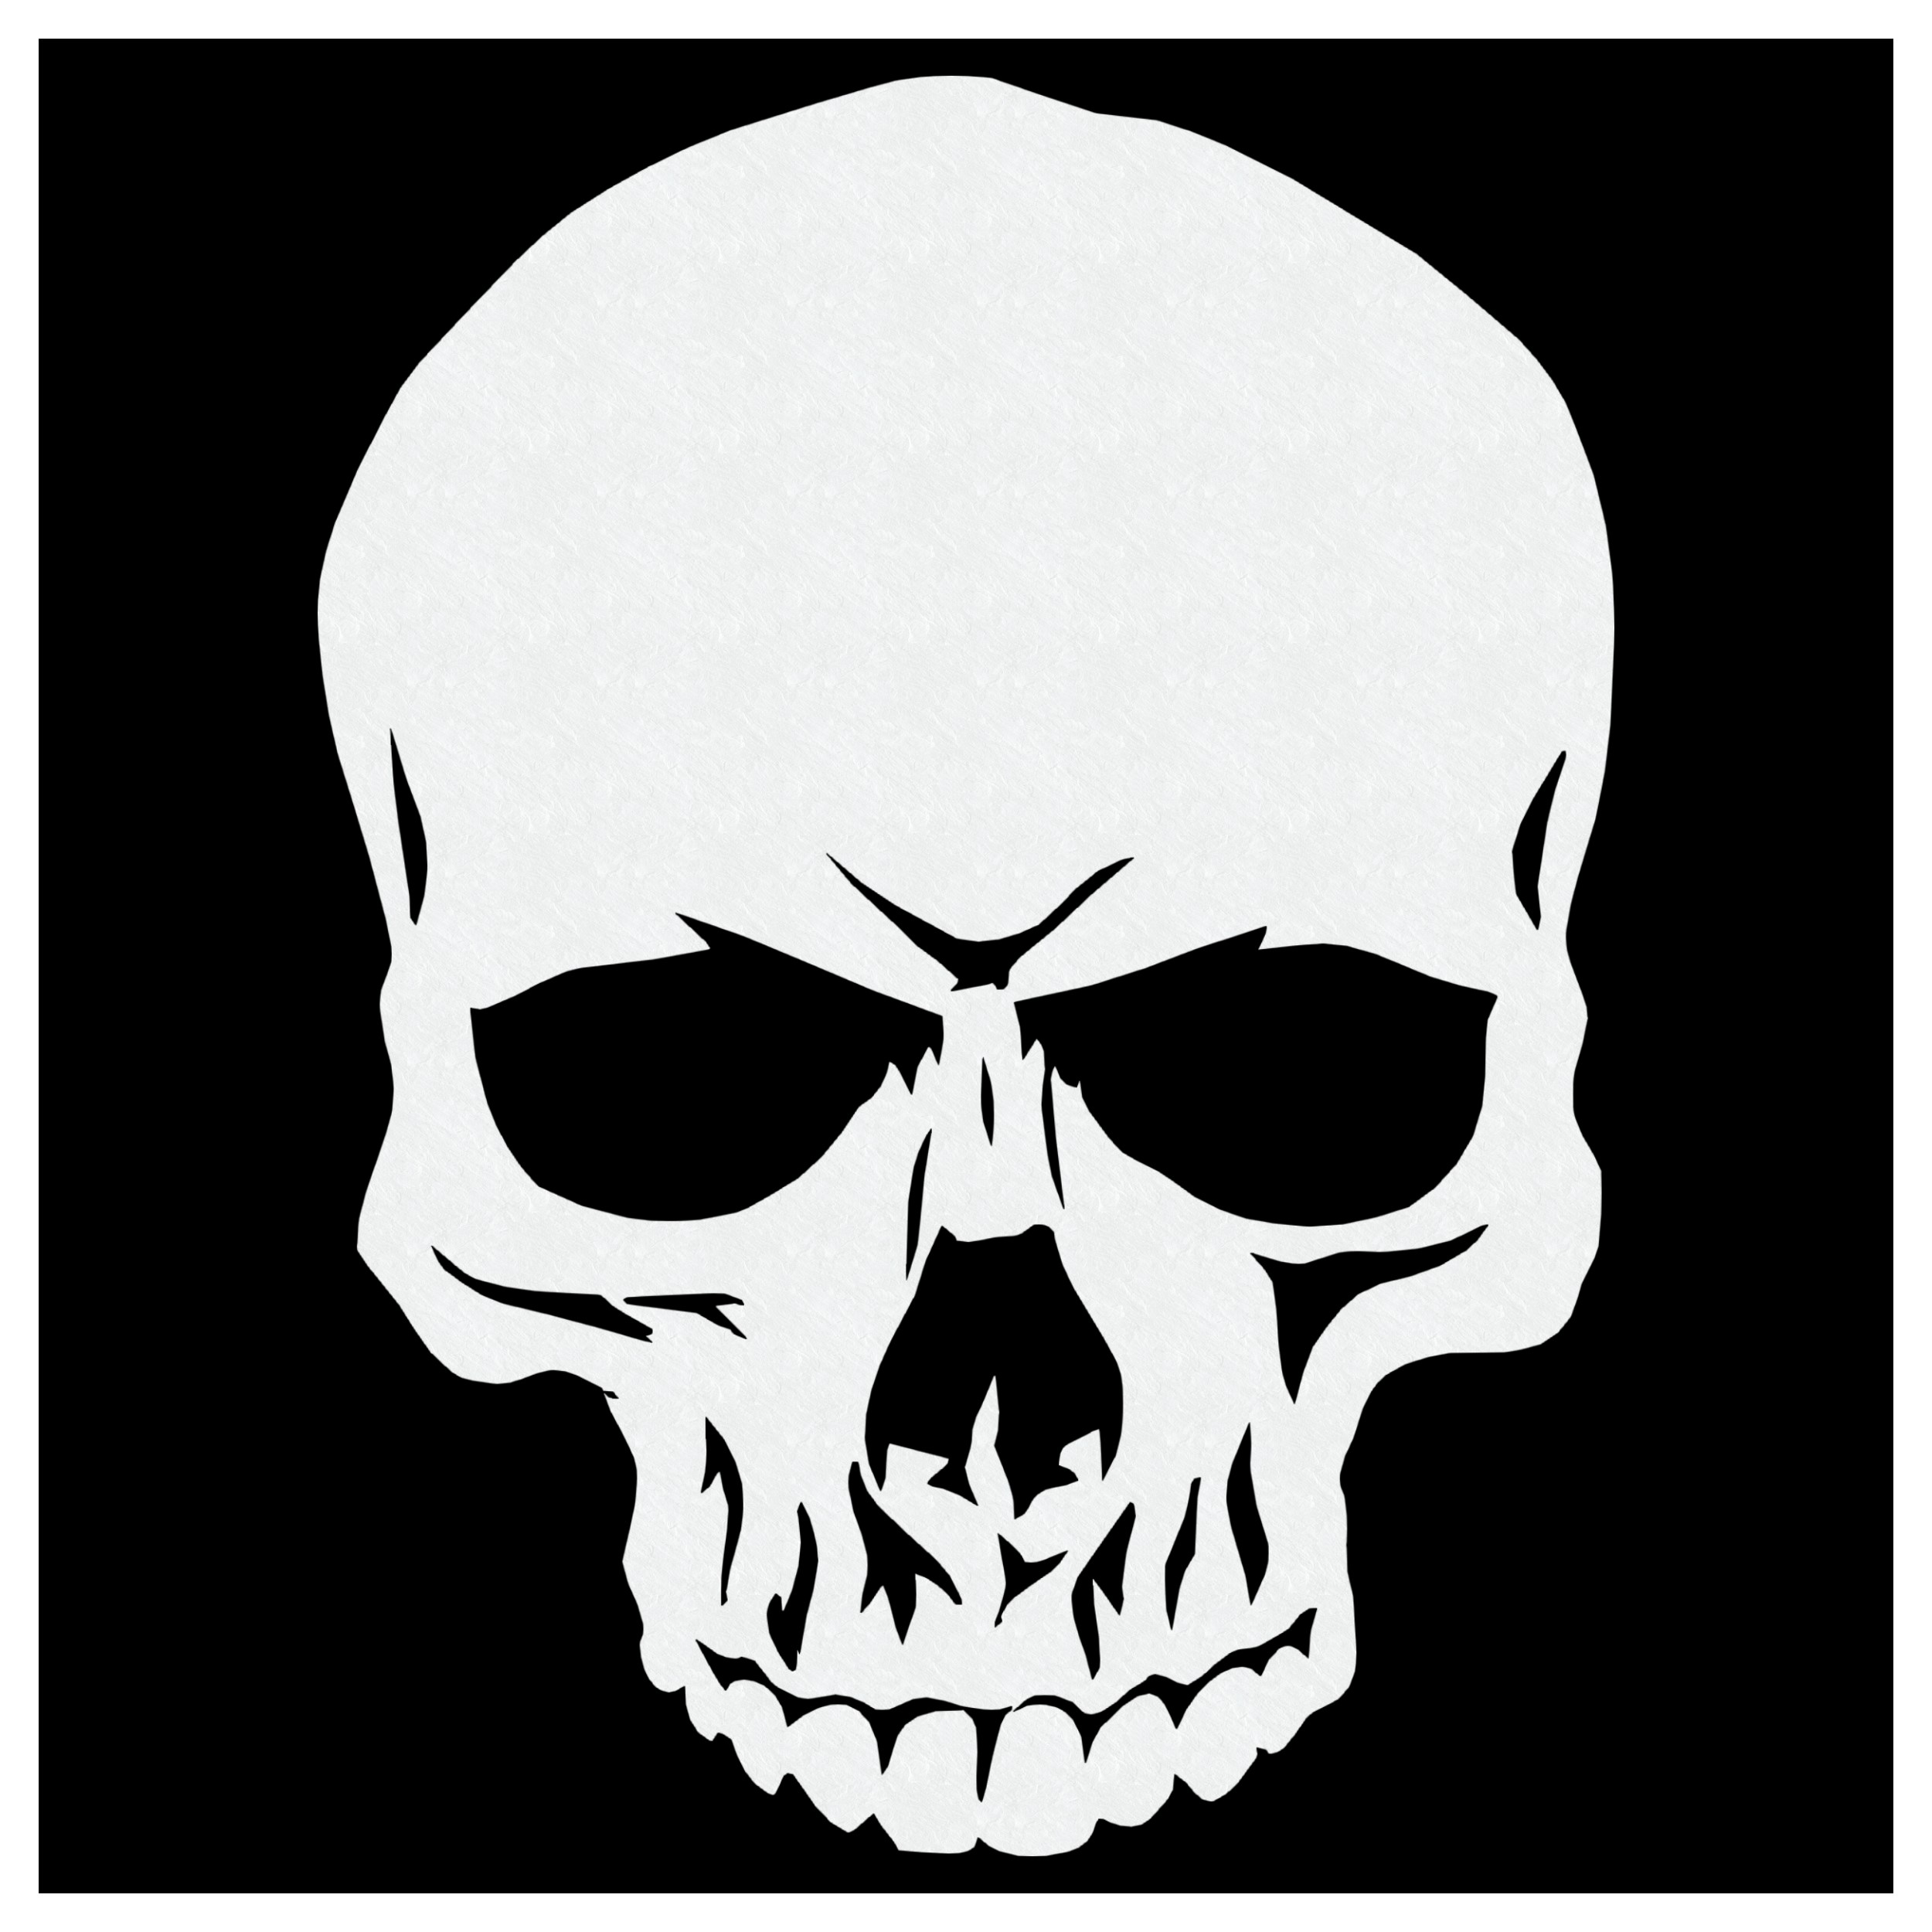 Skull's Stencil Airbrush Schablone für Schädel Totenköpfe